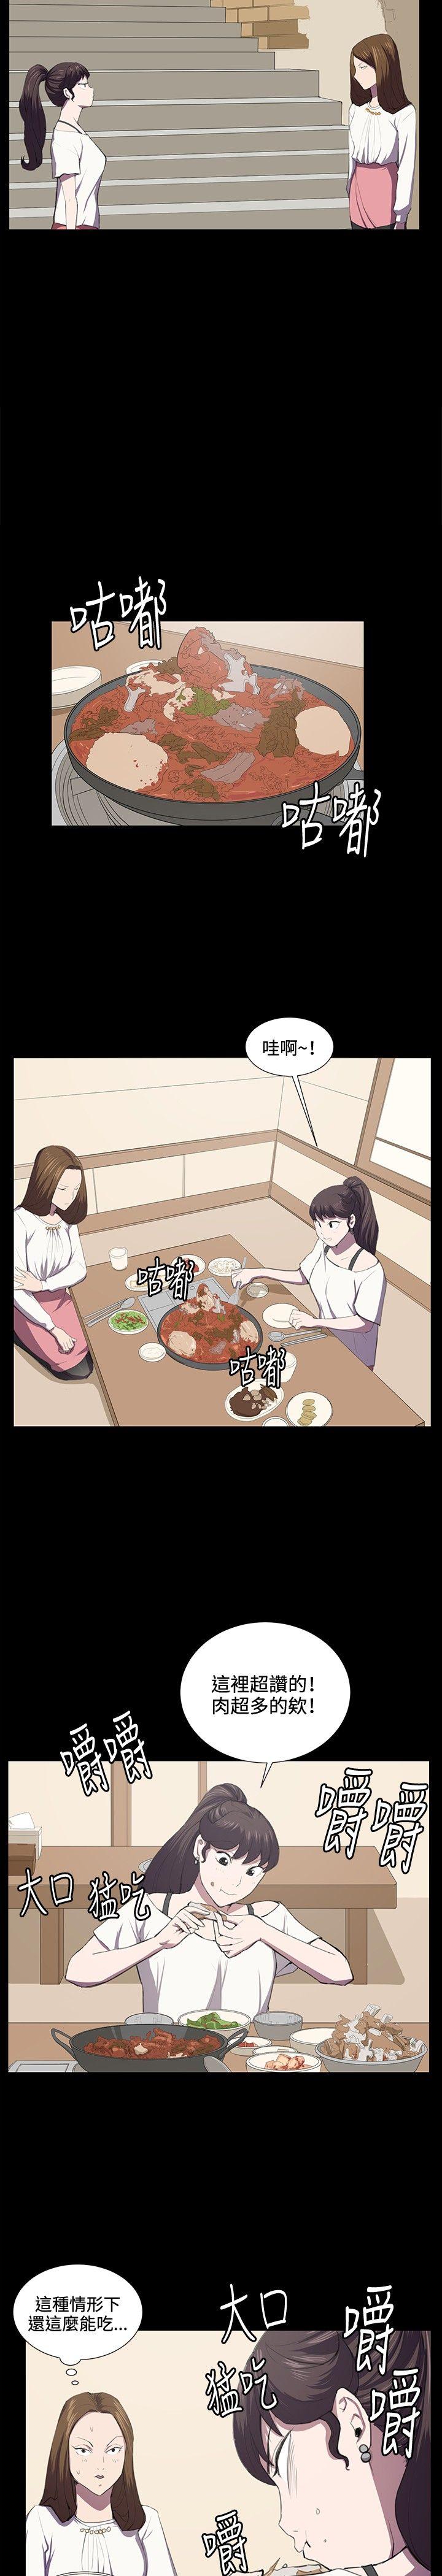 韩国污漫画 深夜便利店 第39话 17